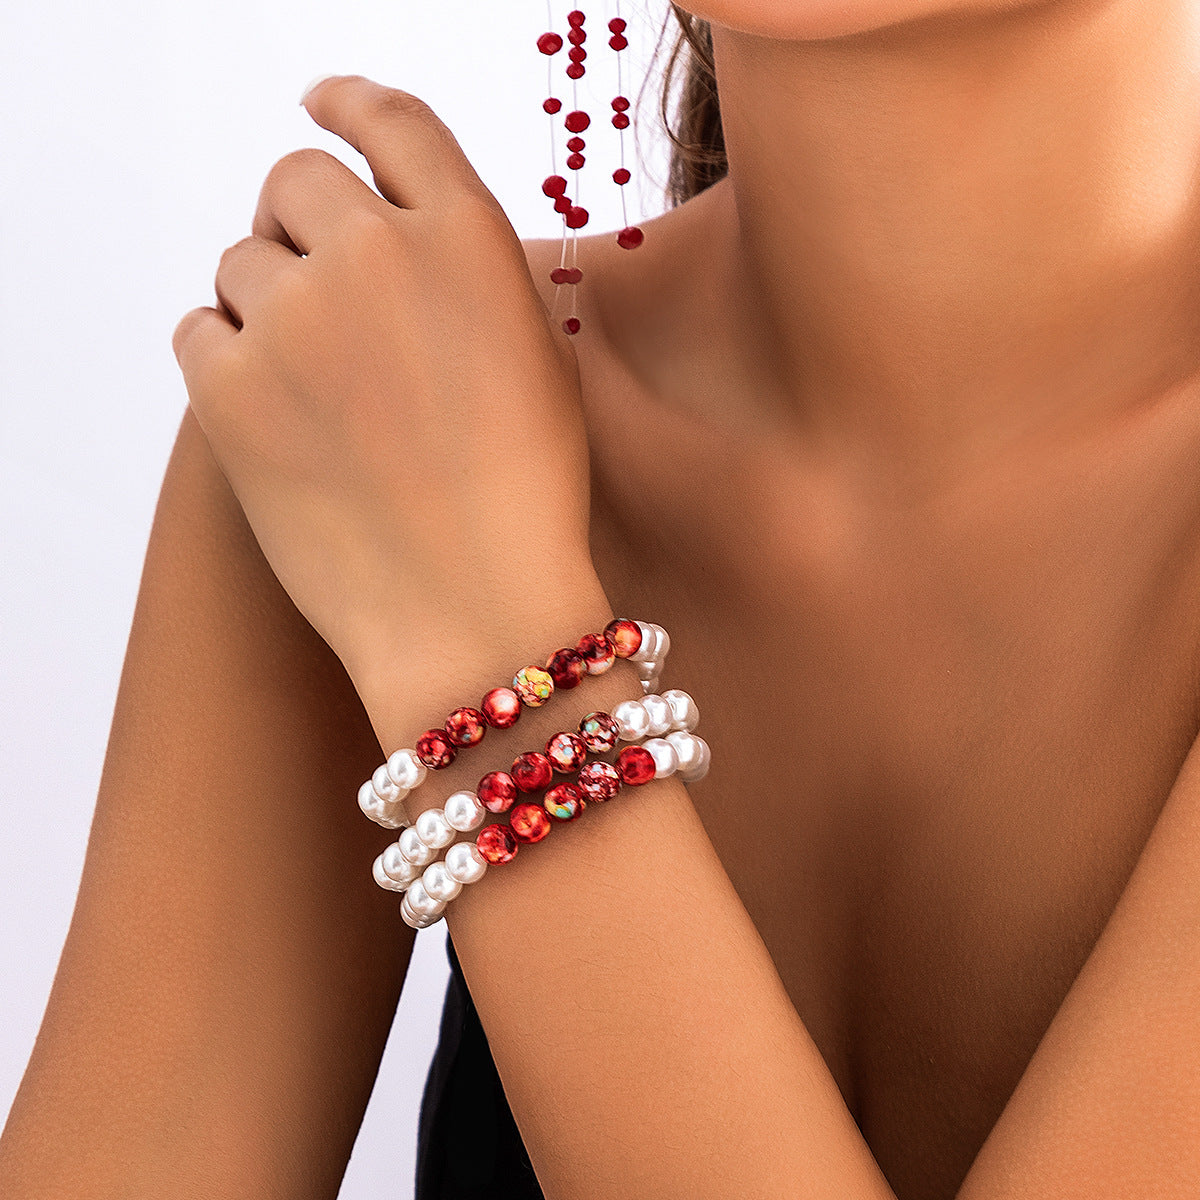 Halloween Gothic Bleeding Tassel Imitation Pearl Necklace Bracelet Earrings Jewelry